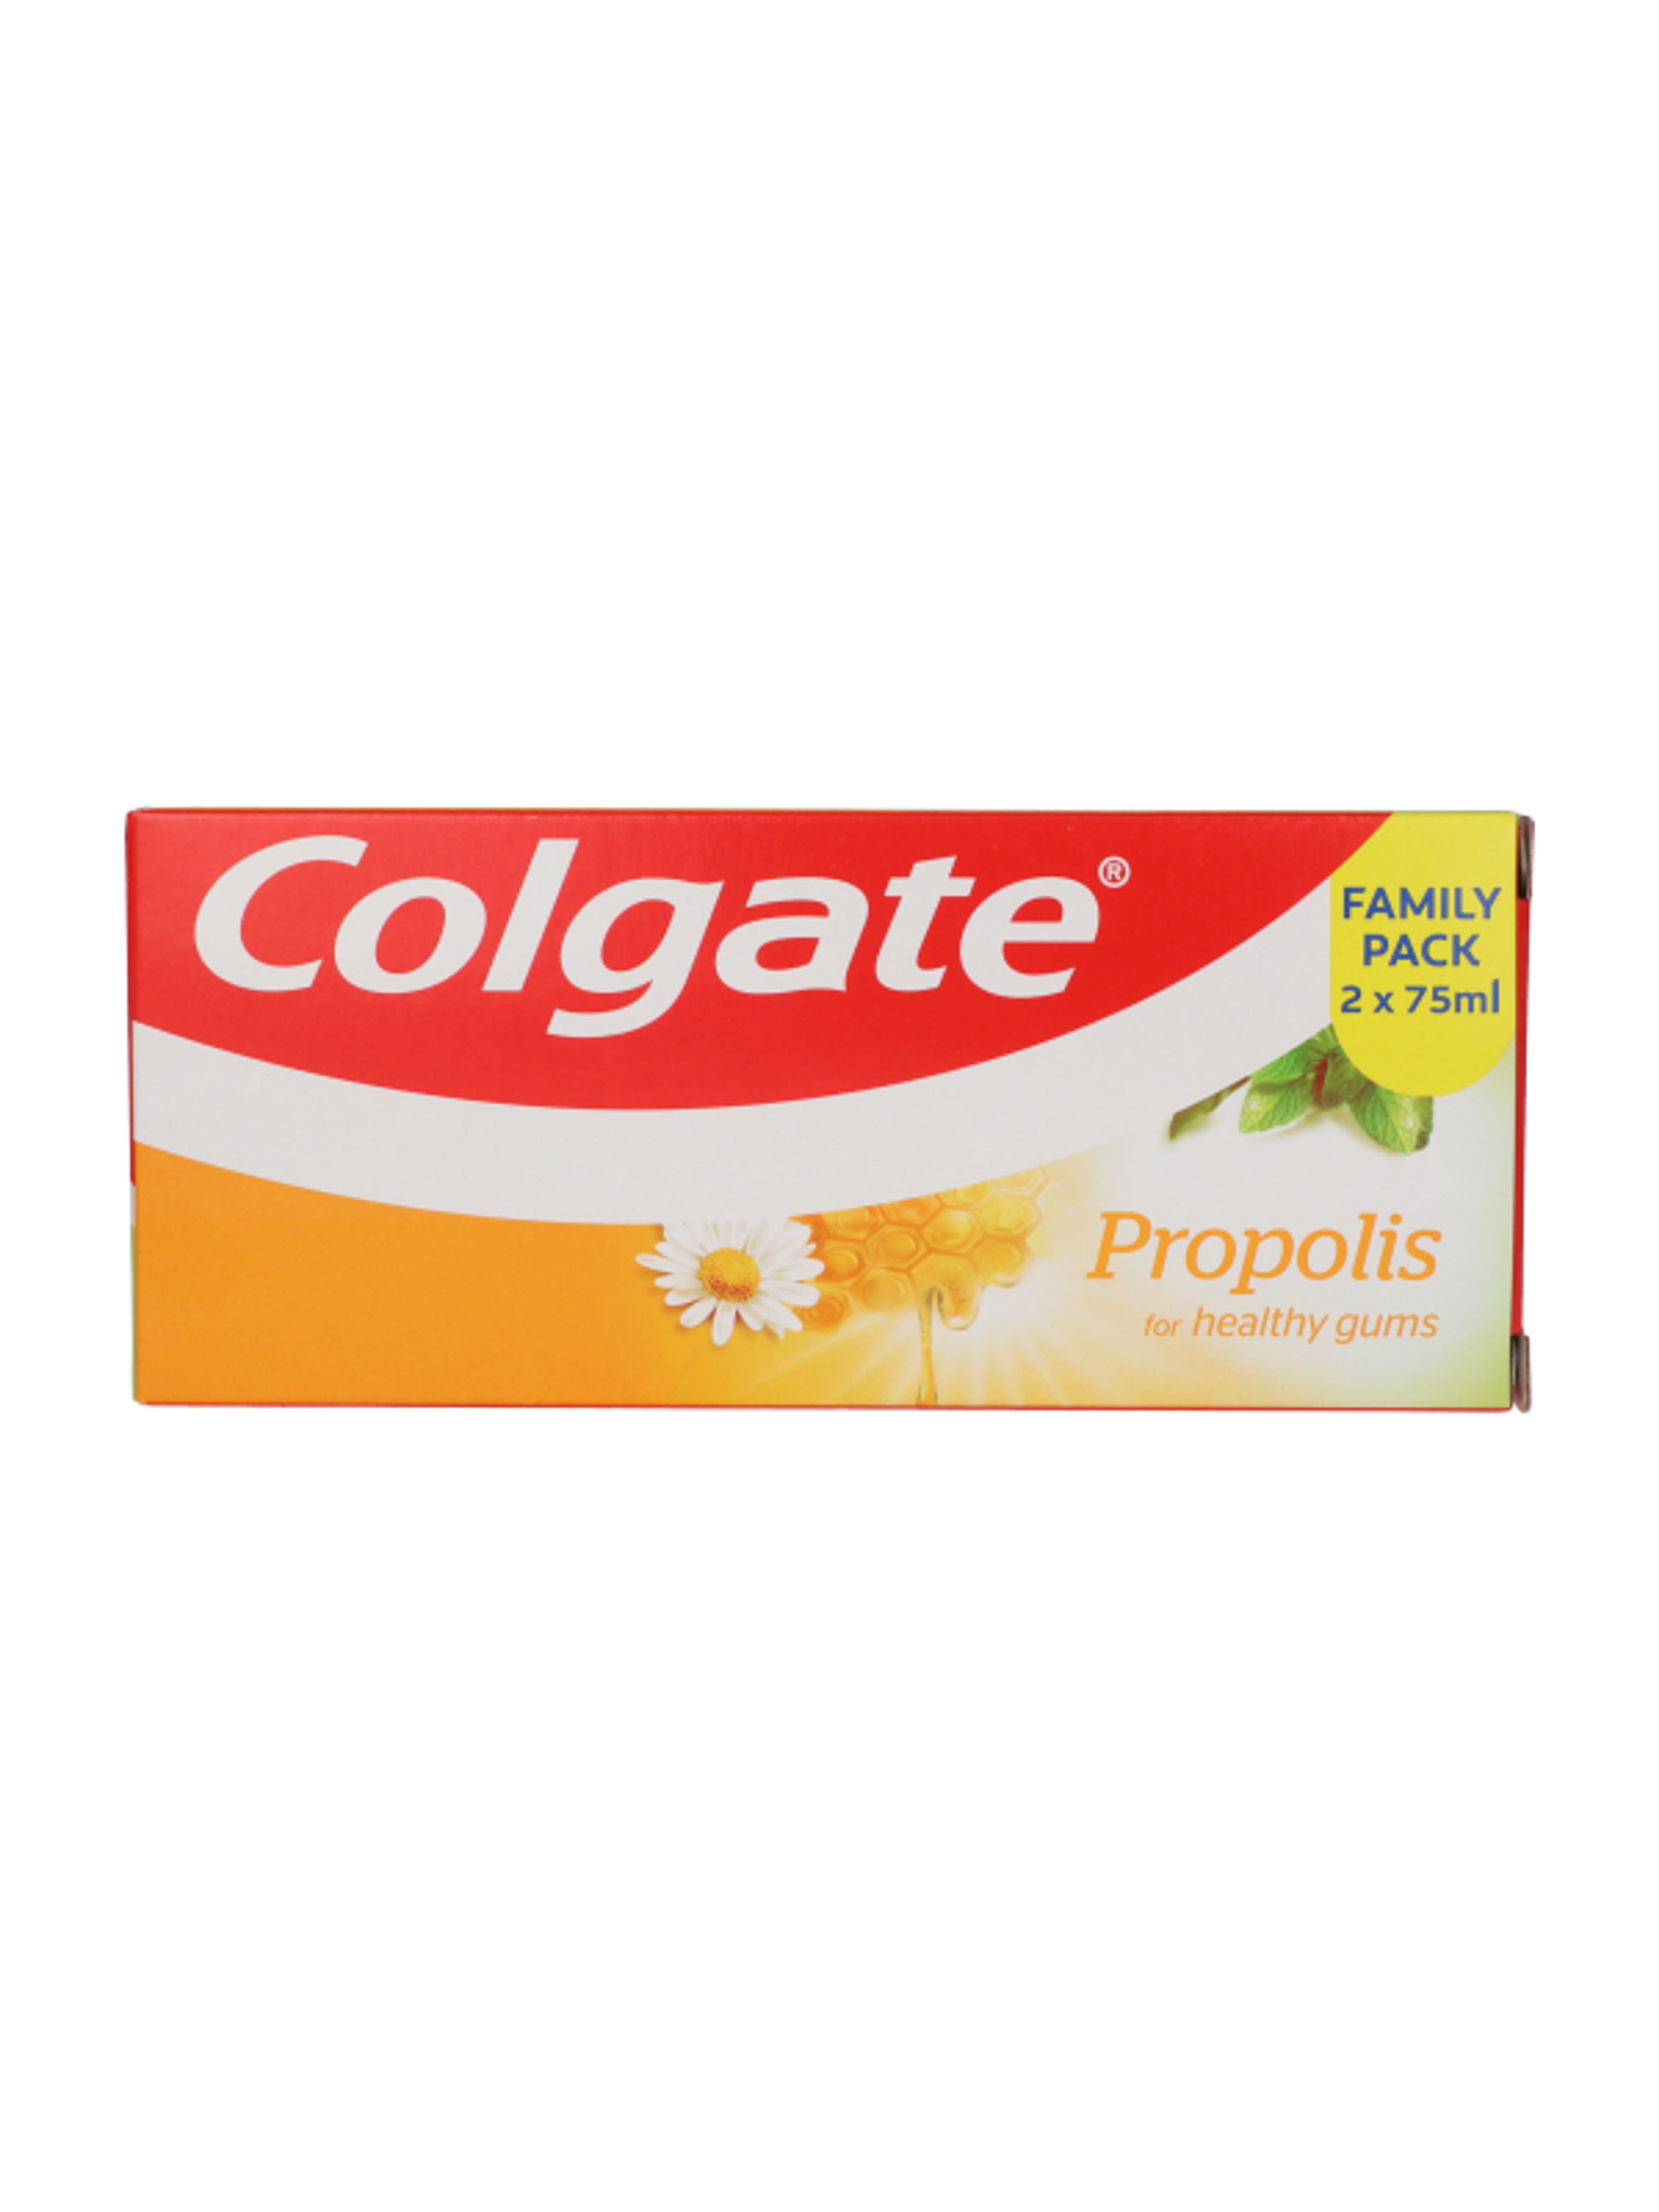 Colgate Propolis fogkrém 2 x 75 ml - 150 ml-1